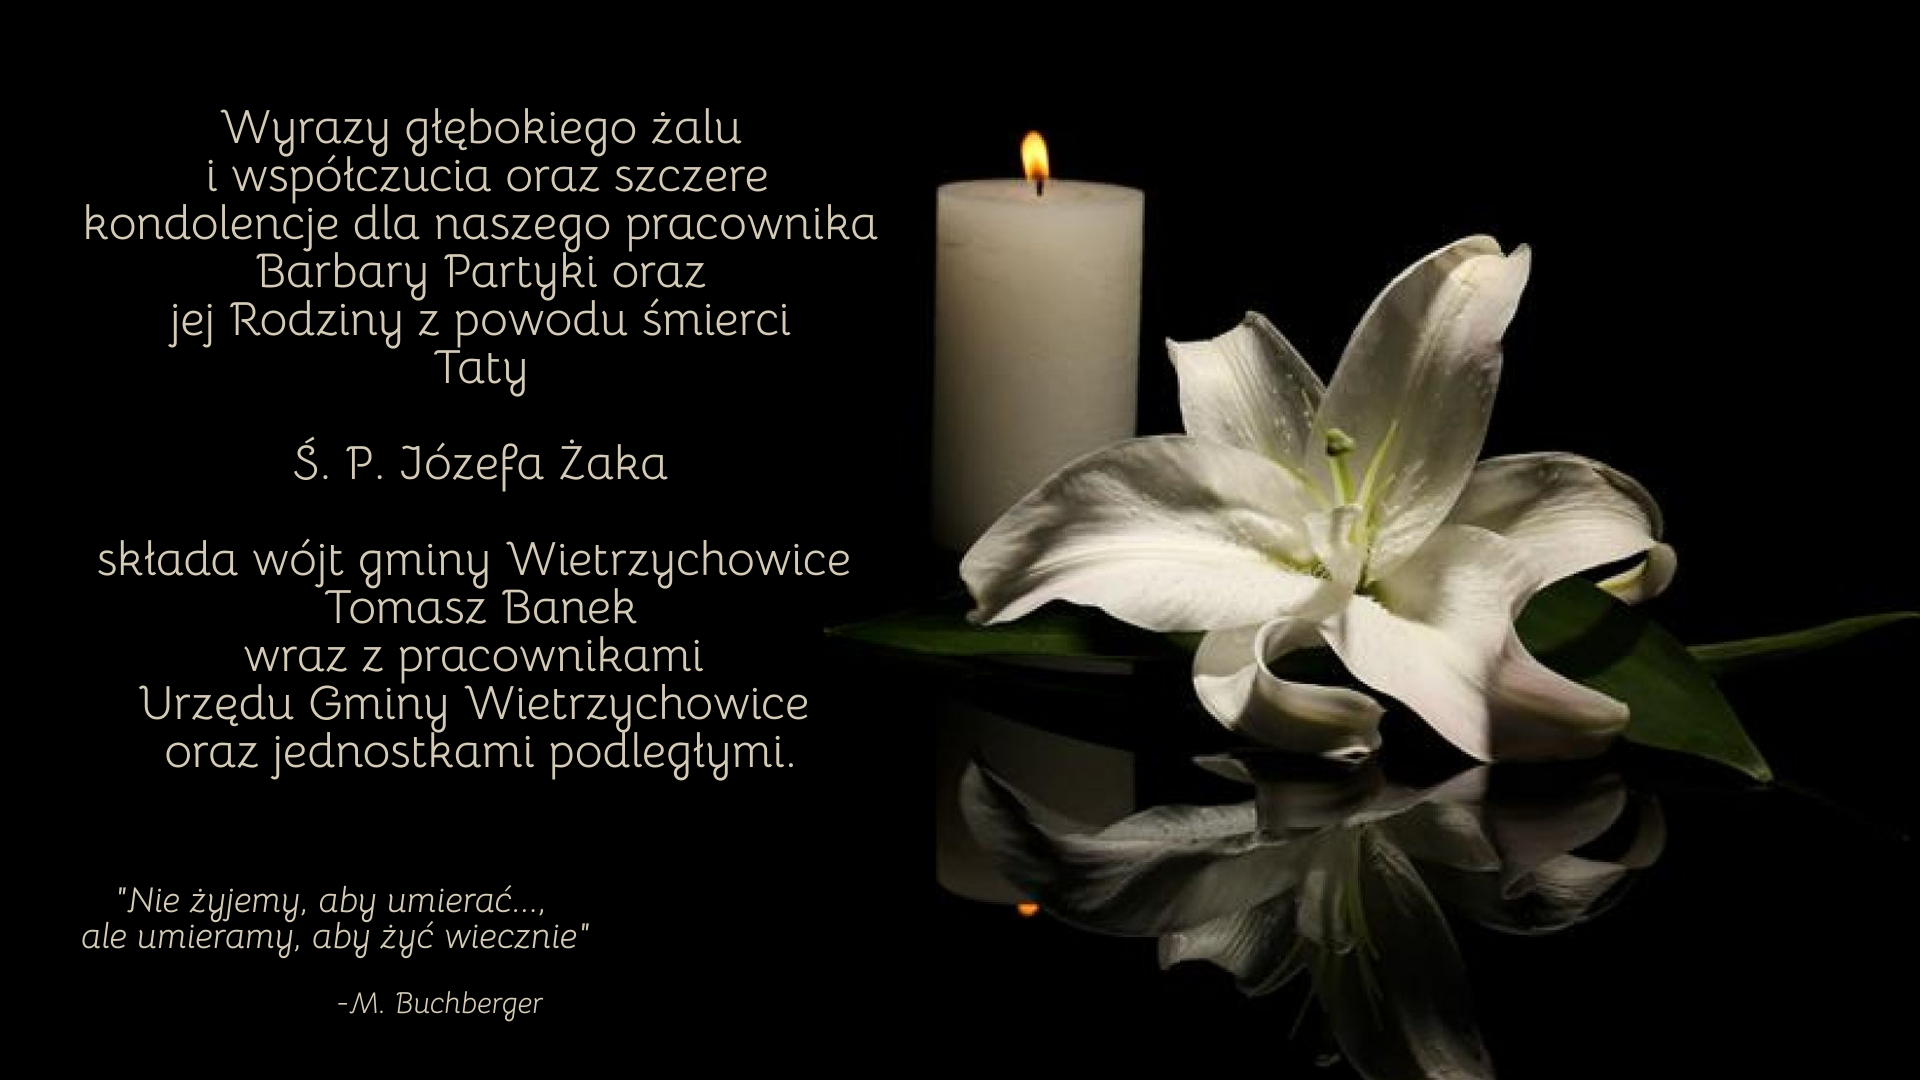 grafika przedstawia czarne tło, z prawej strony widnieje obraz białej świecy z płomieniem oraz biały kwiat, z lewej strony znajduje się treść kondolencji